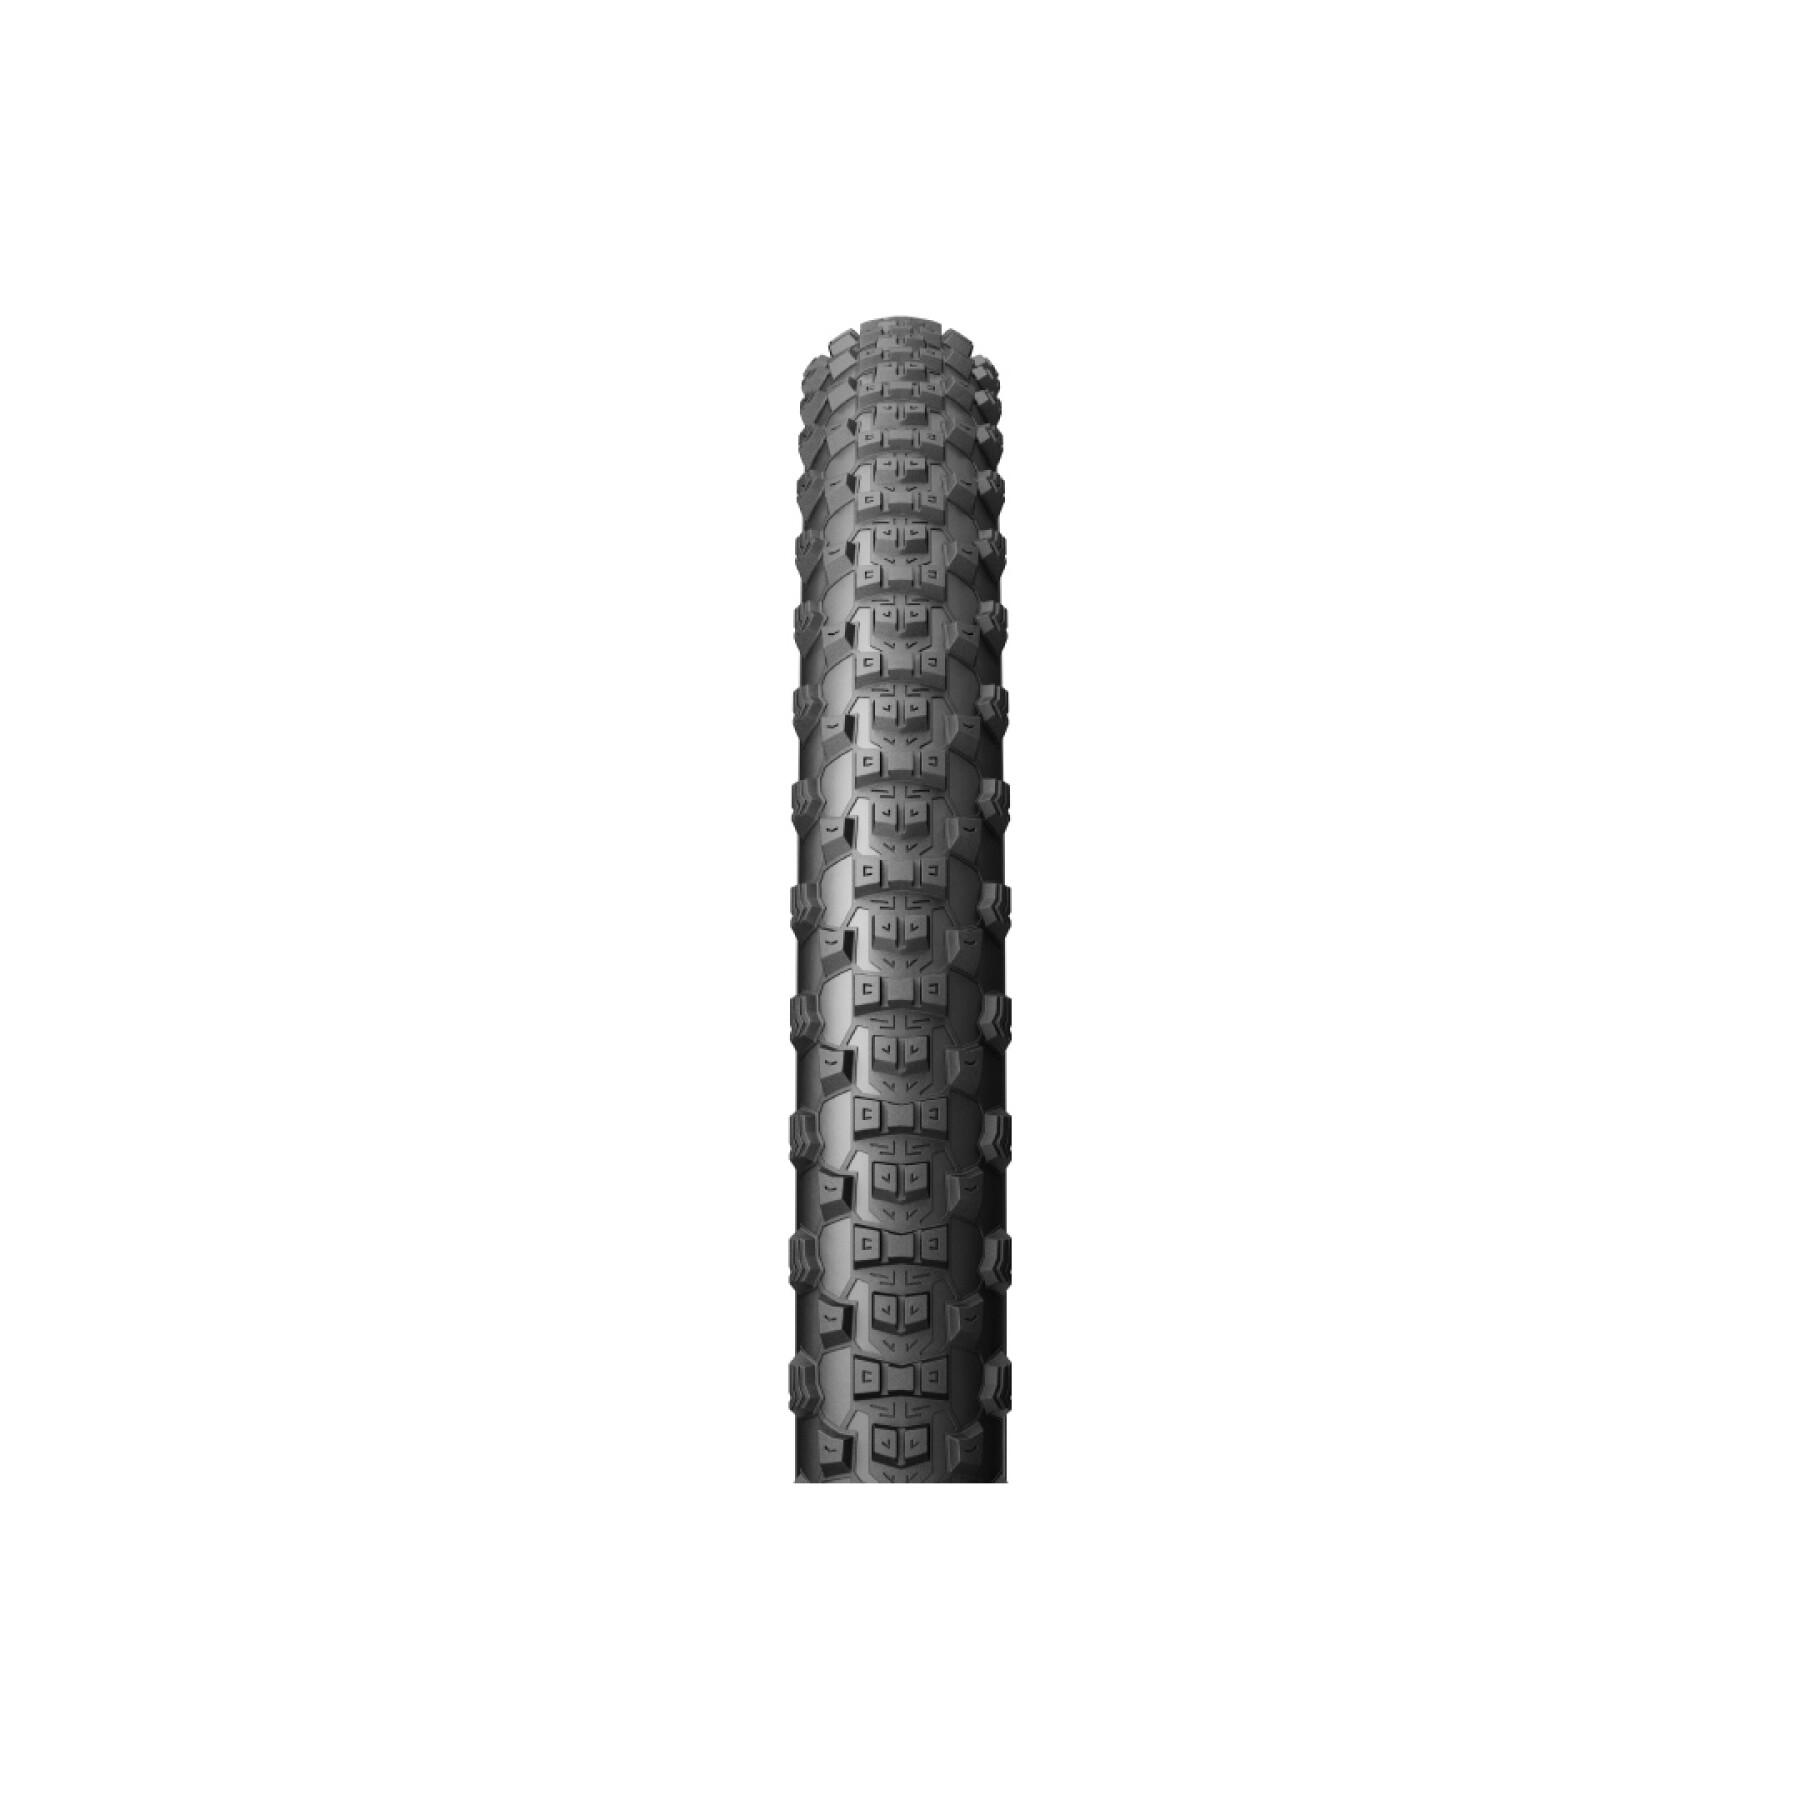 Rear tire Pirelli Scorpion Trail 27.5x2.4